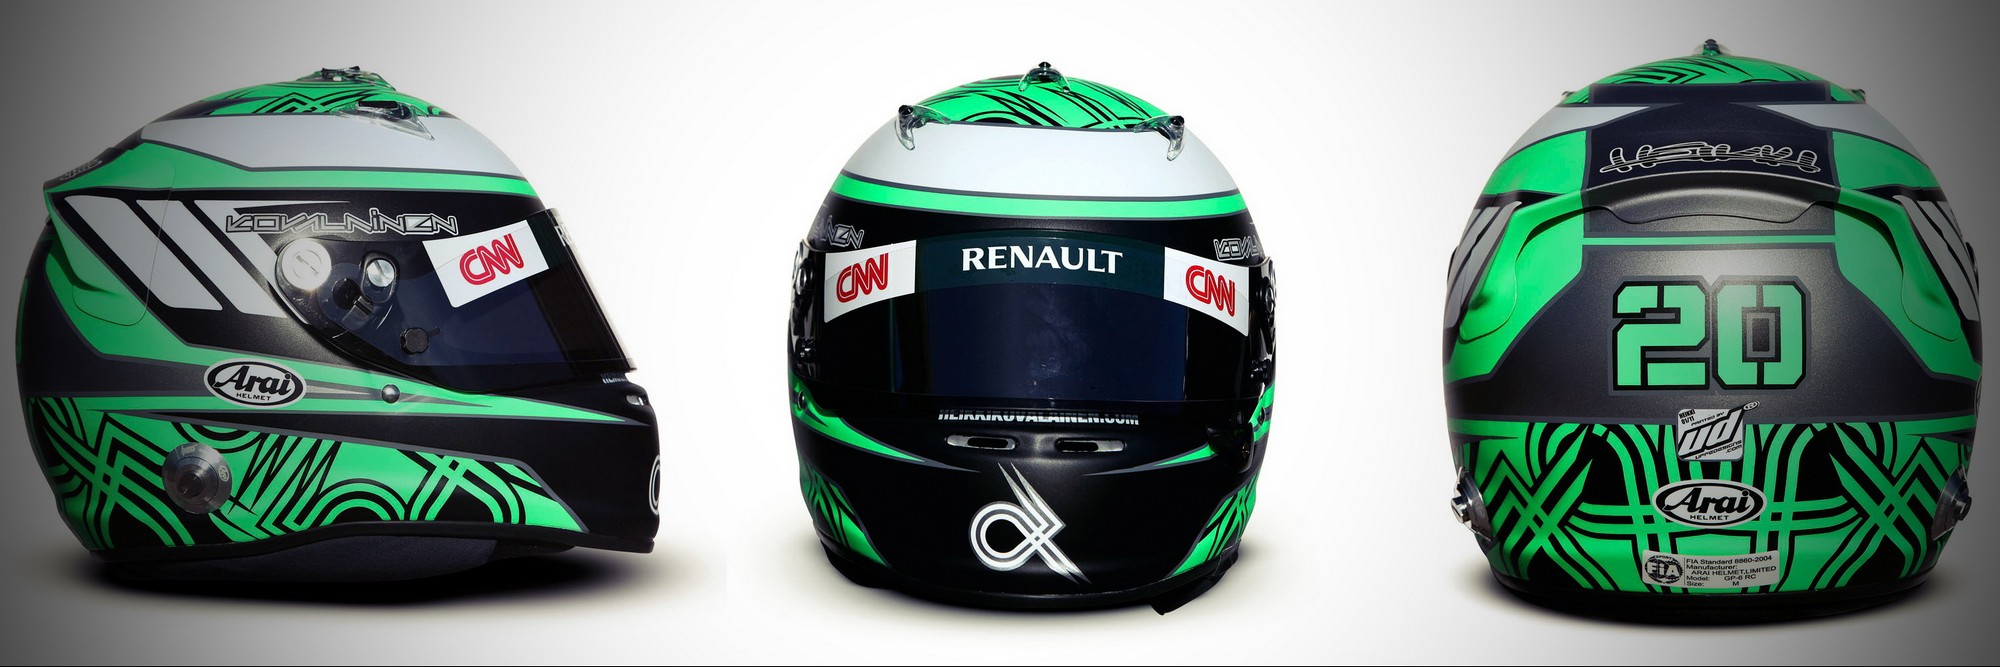 Шлем Хейкки Ковалайнена на сезон 2011 года | 2011 helmet of Heikki Kovalainen